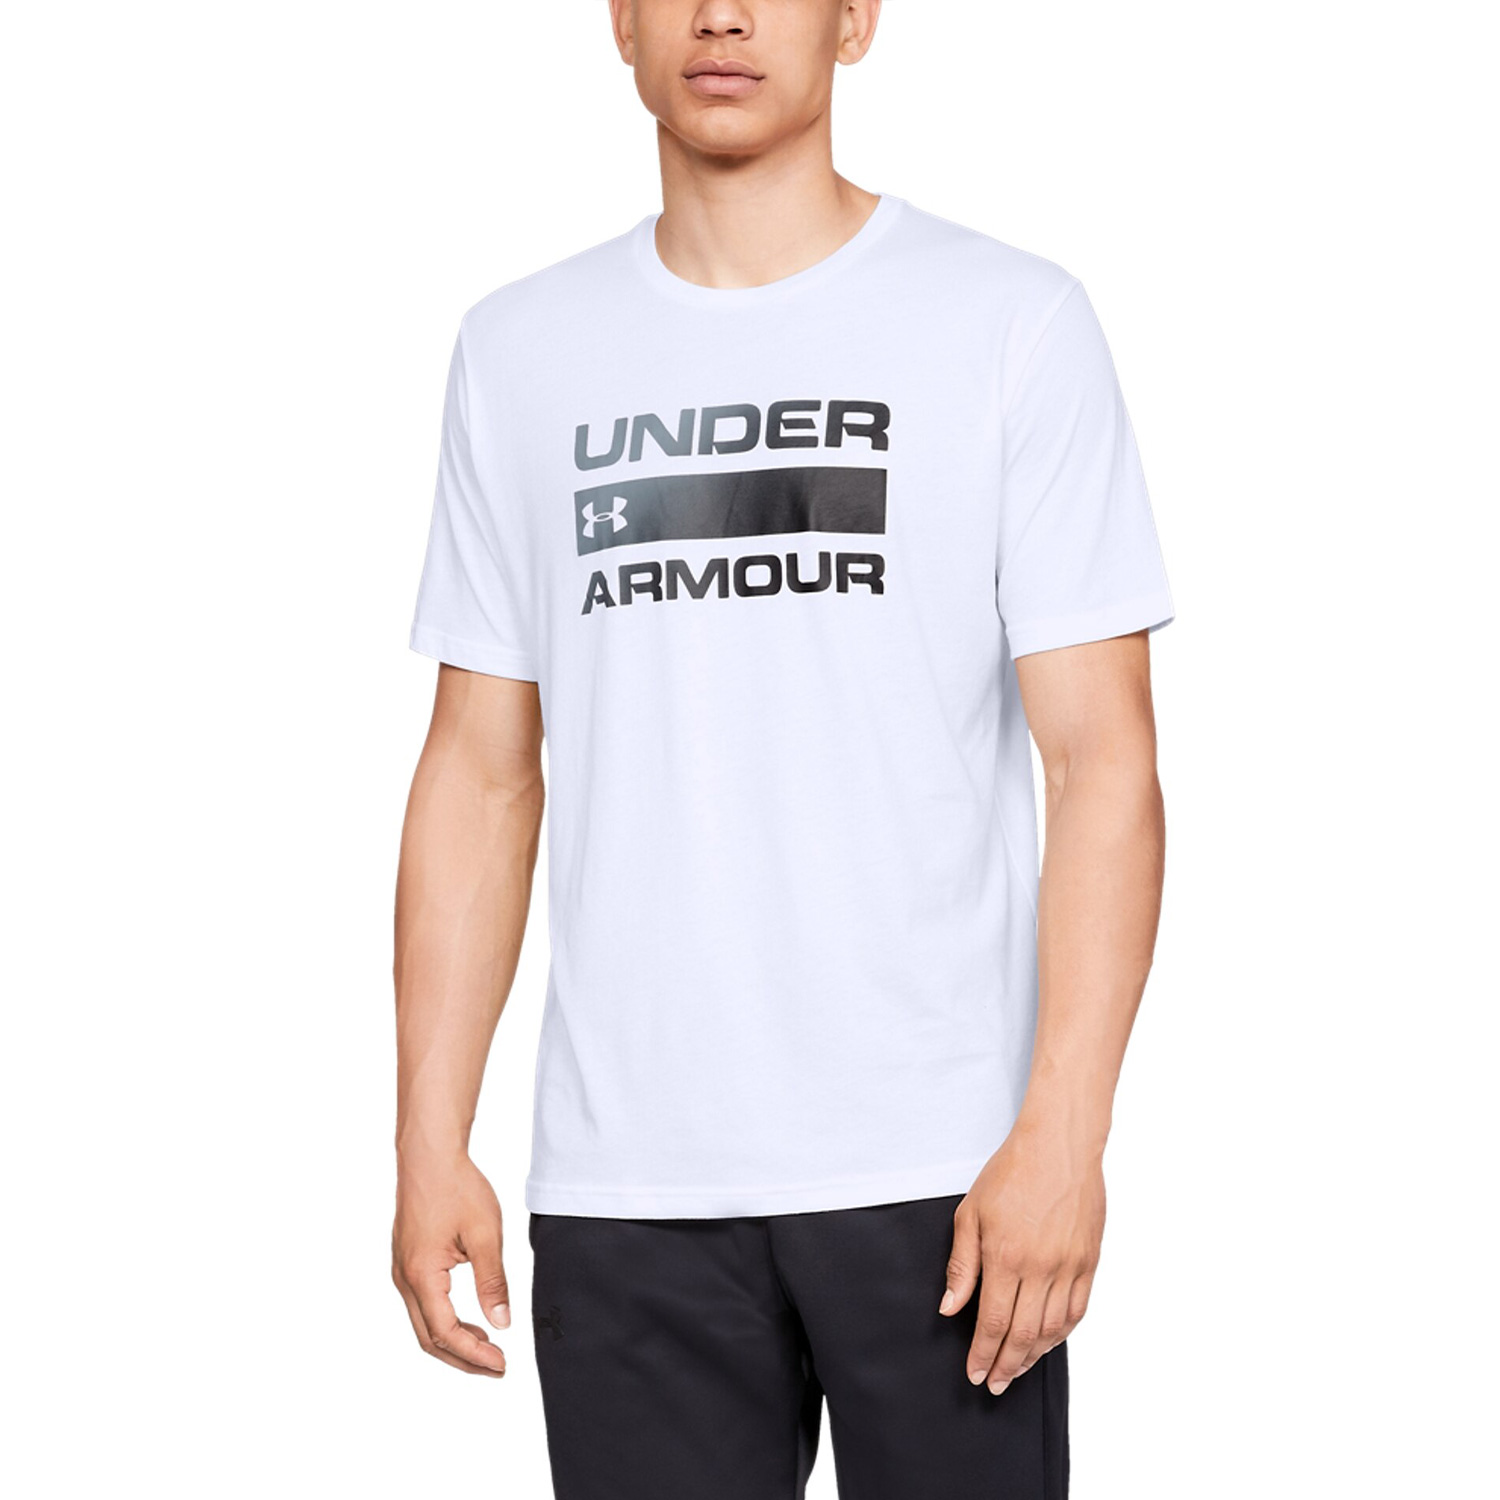 Under Armour Team Issue Wordmark T-Shirt - White/Black